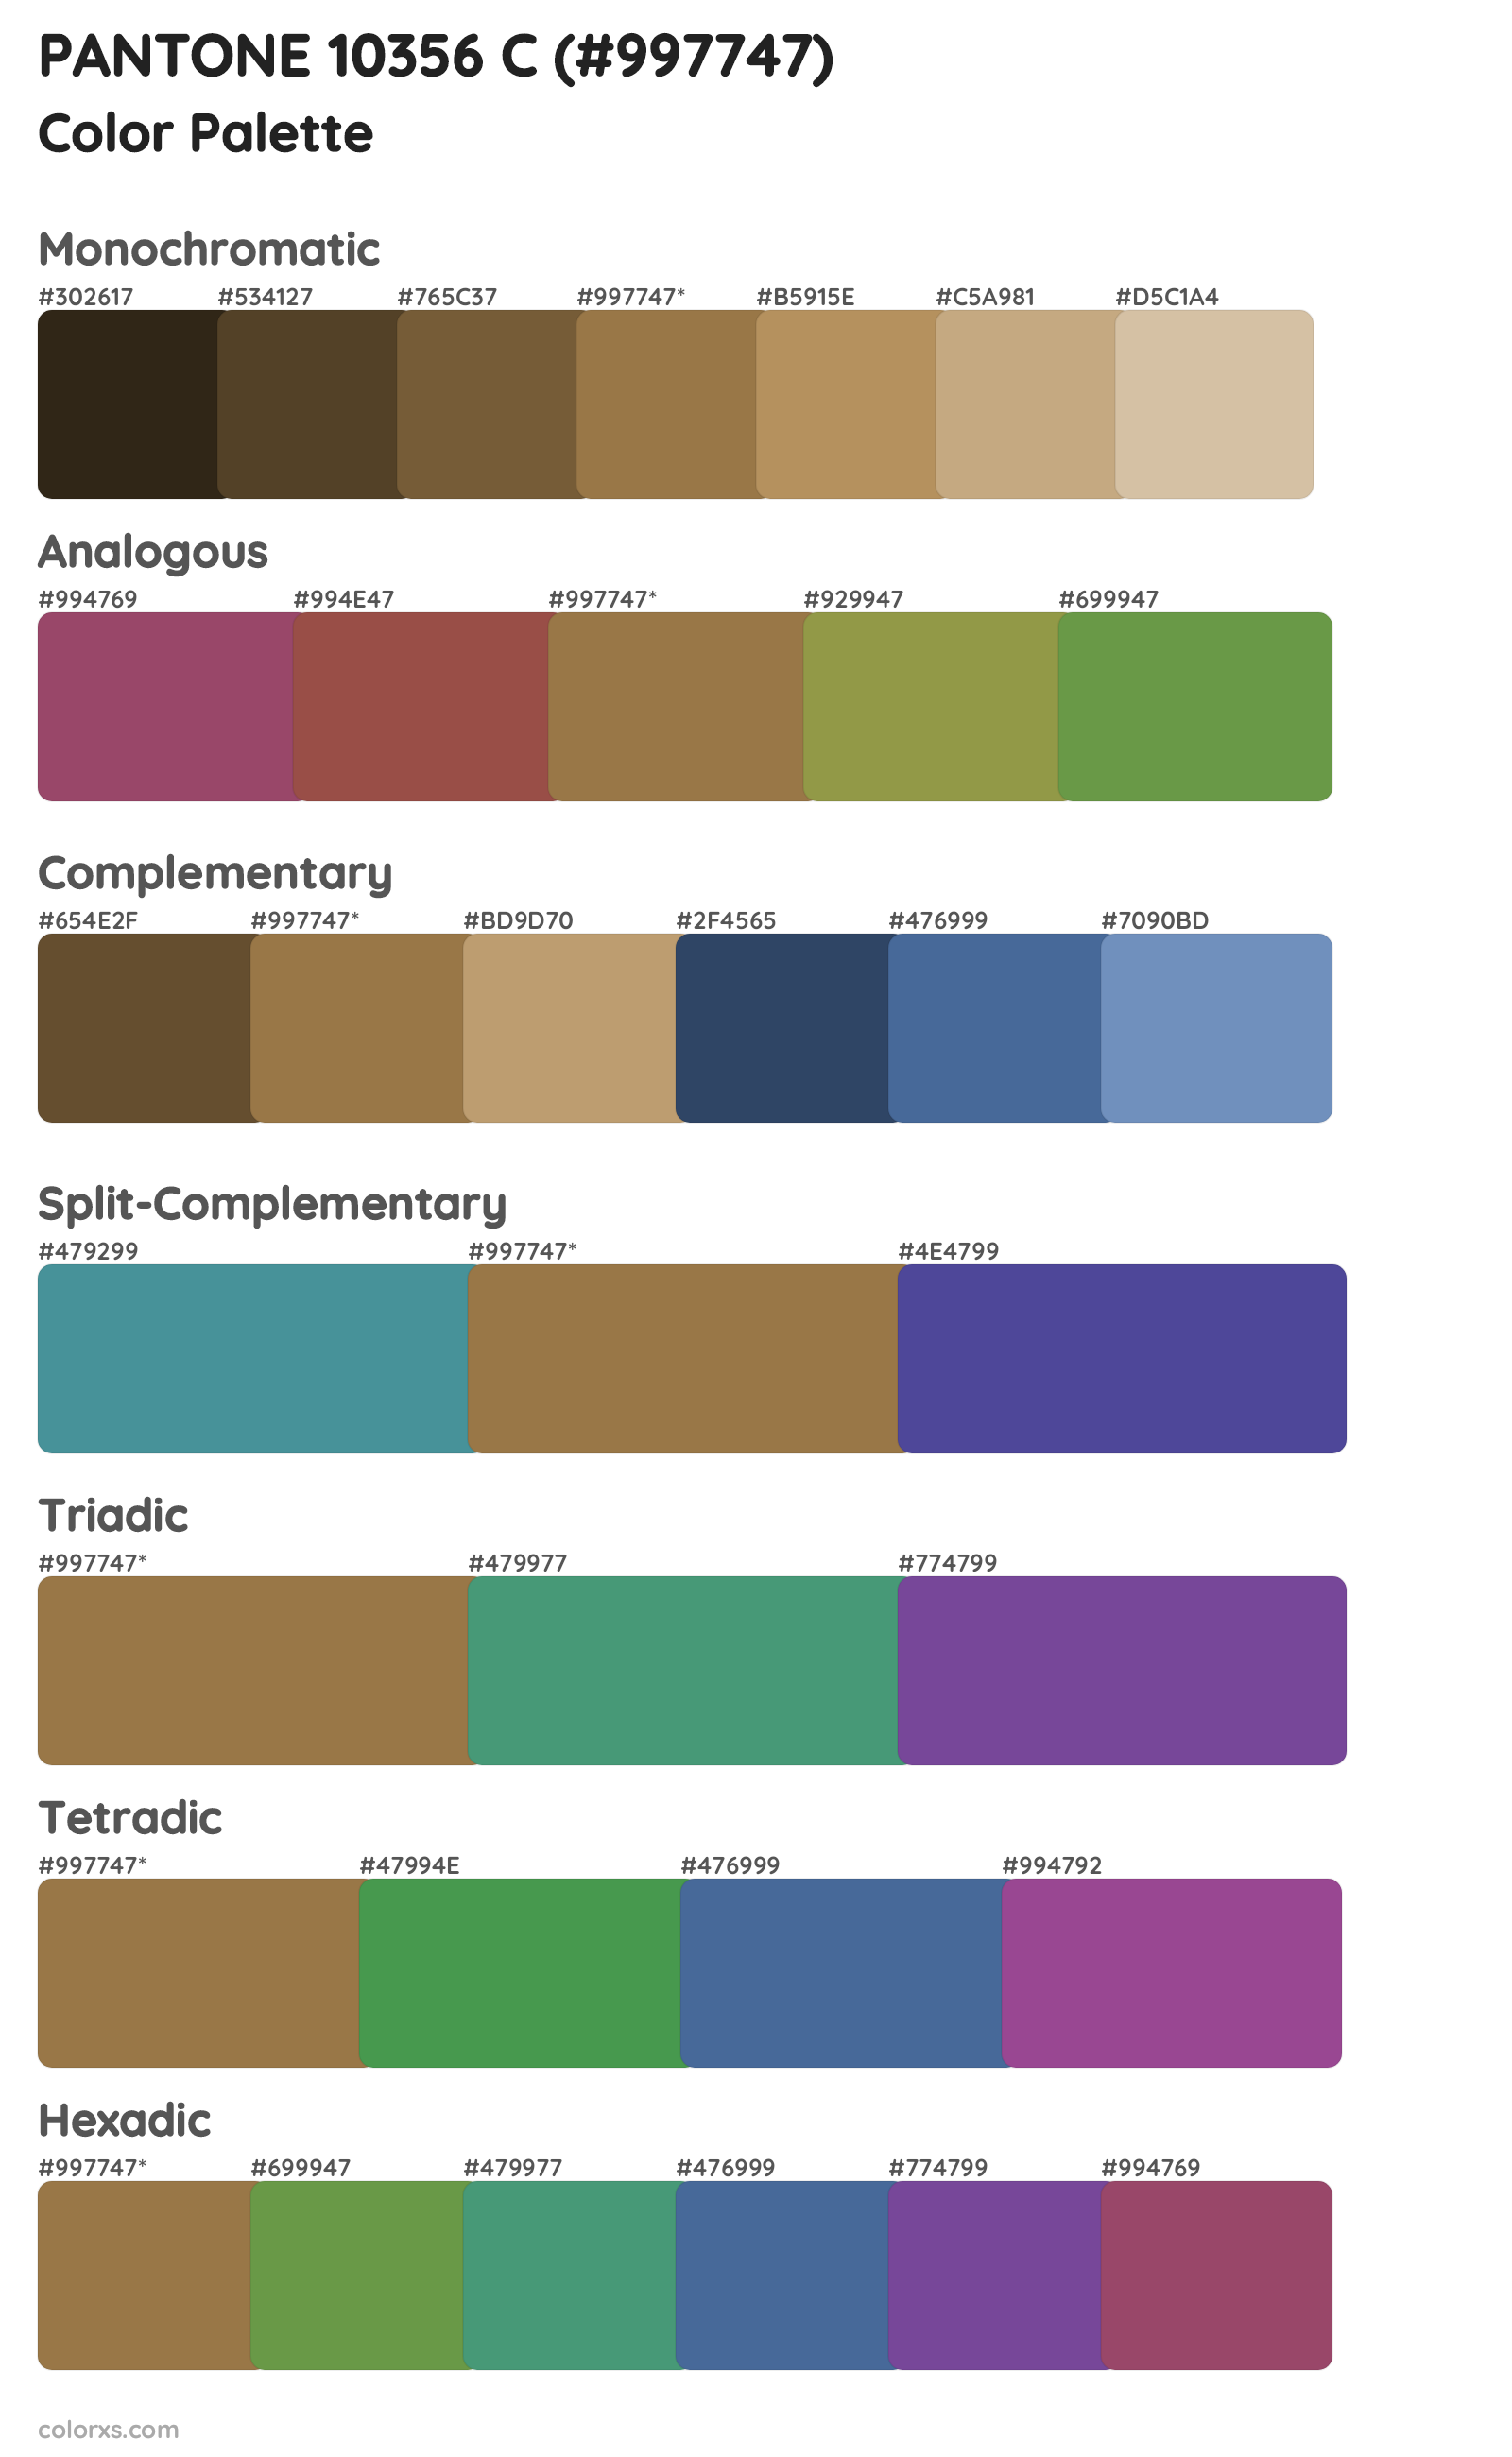 PANTONE 10356 C Color Scheme Palettes